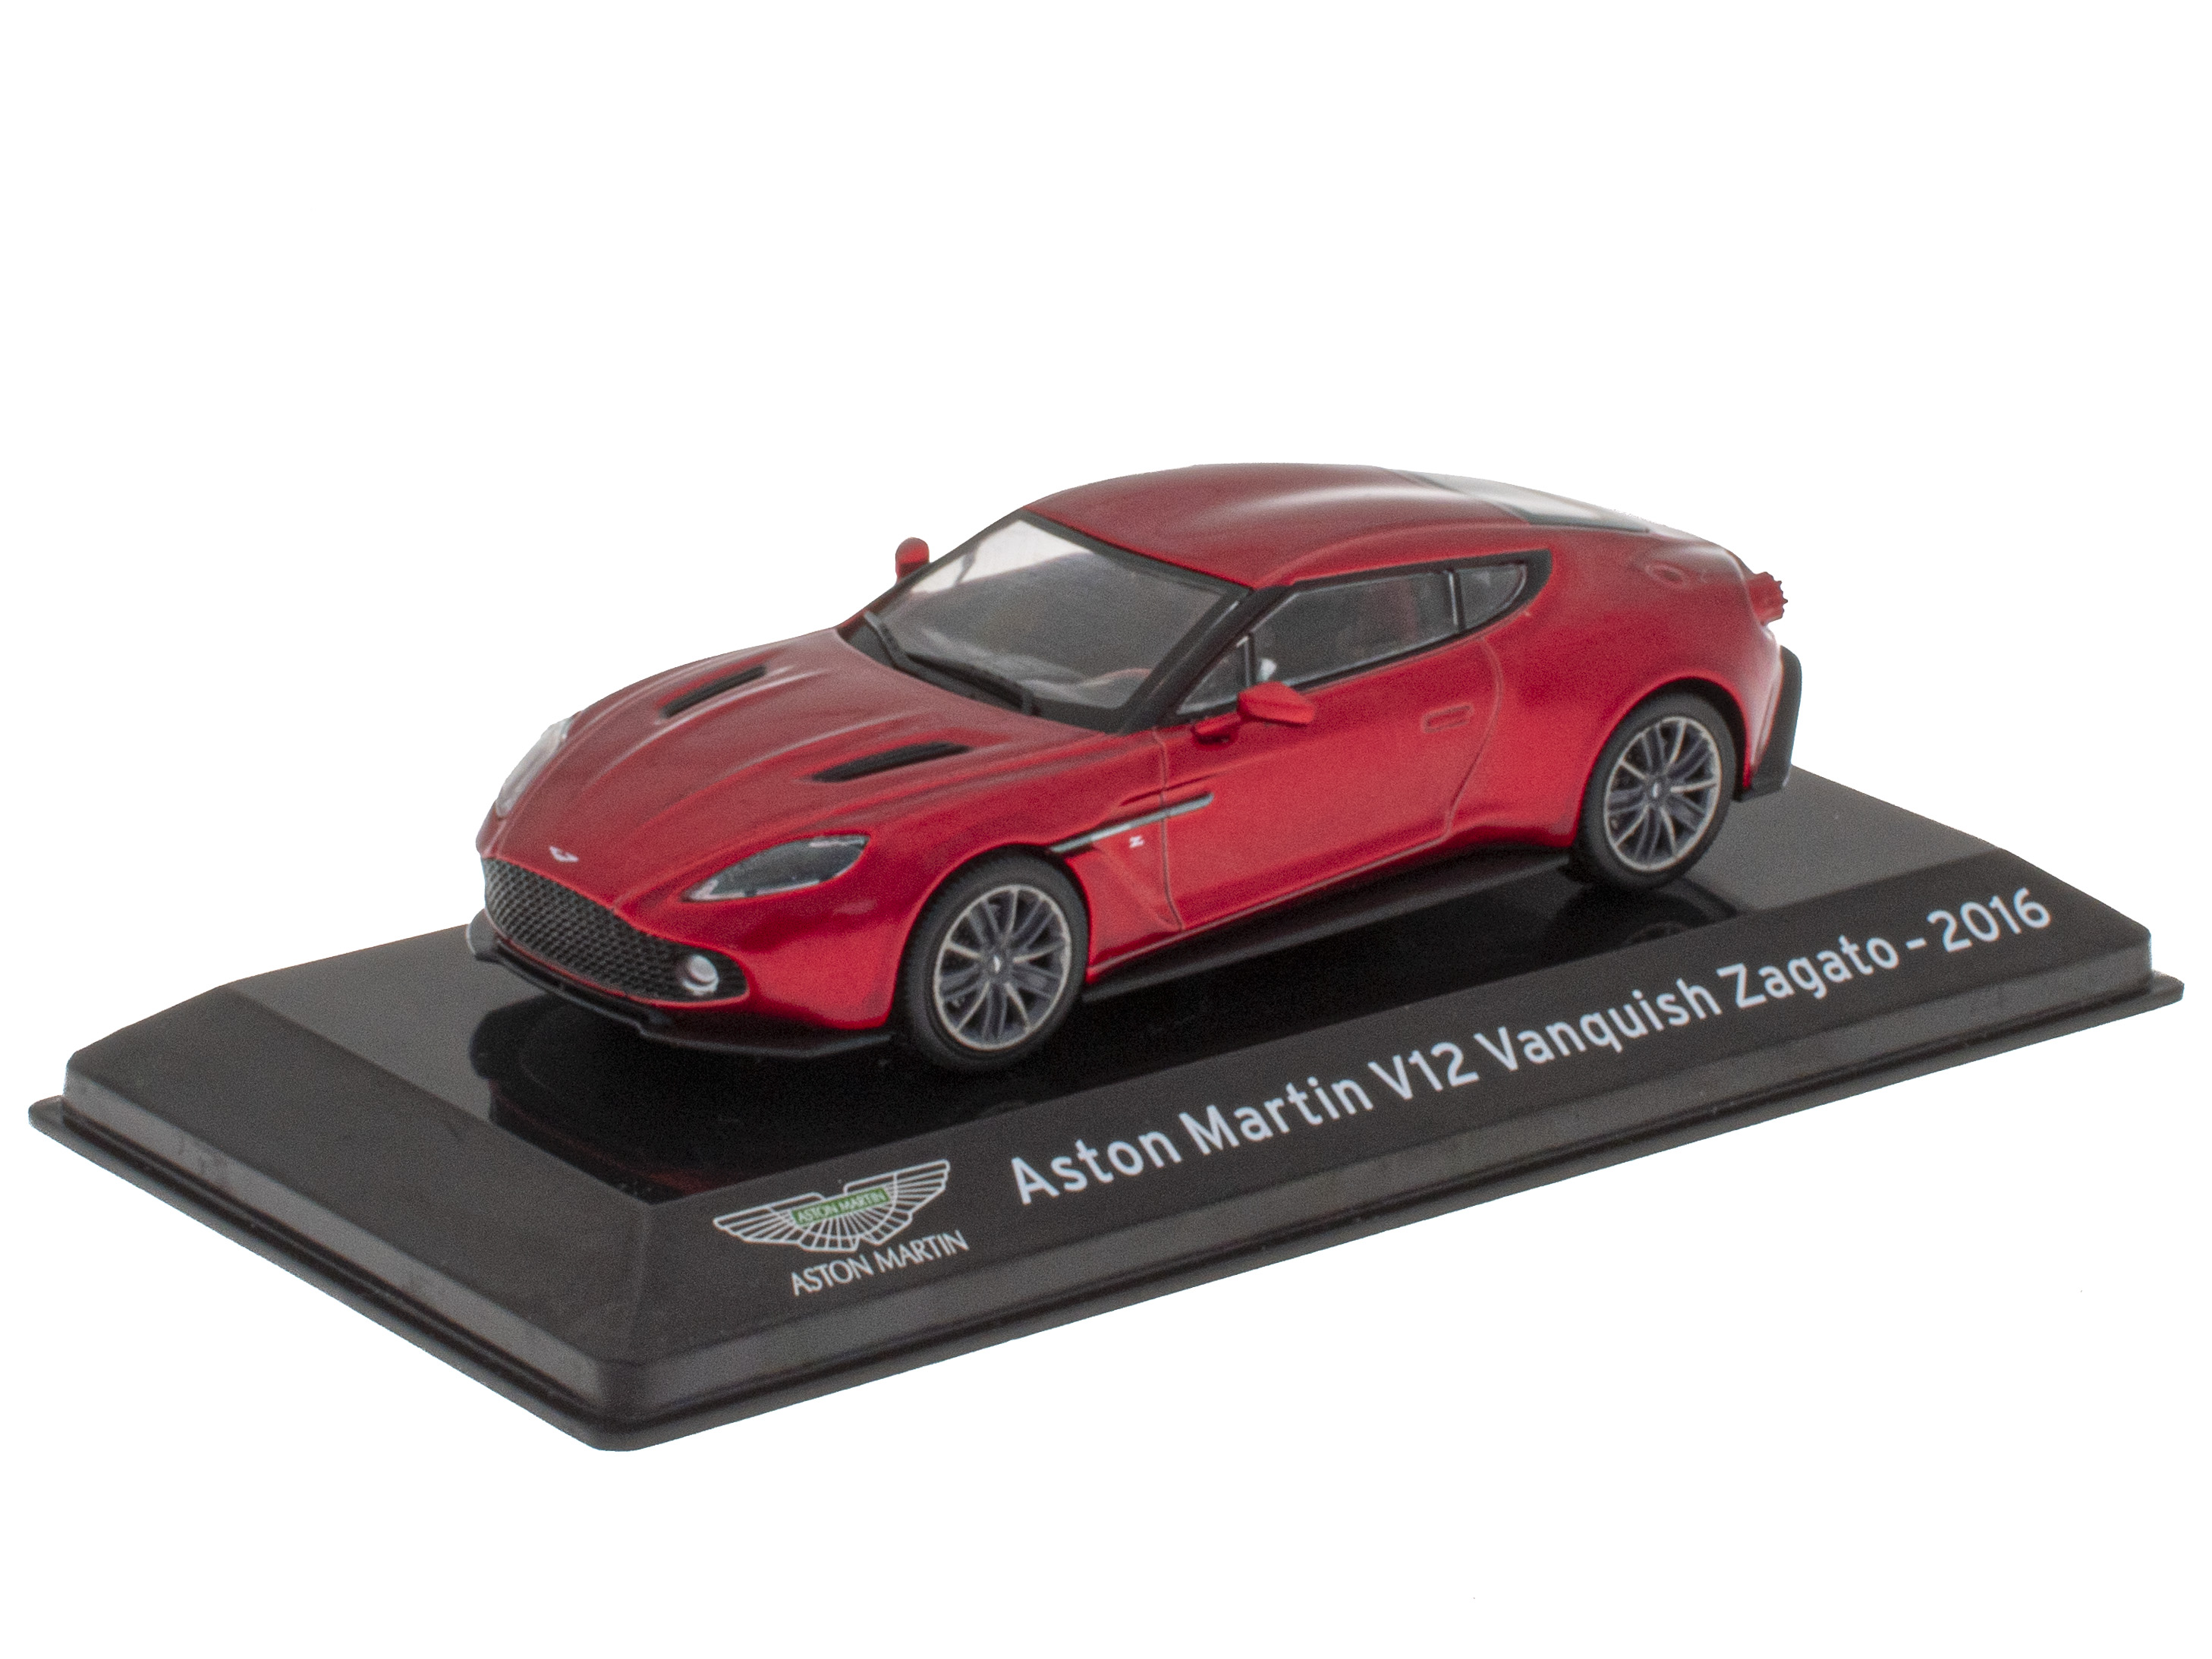 Aston Martin V12 Vanquish Zagato - 2016